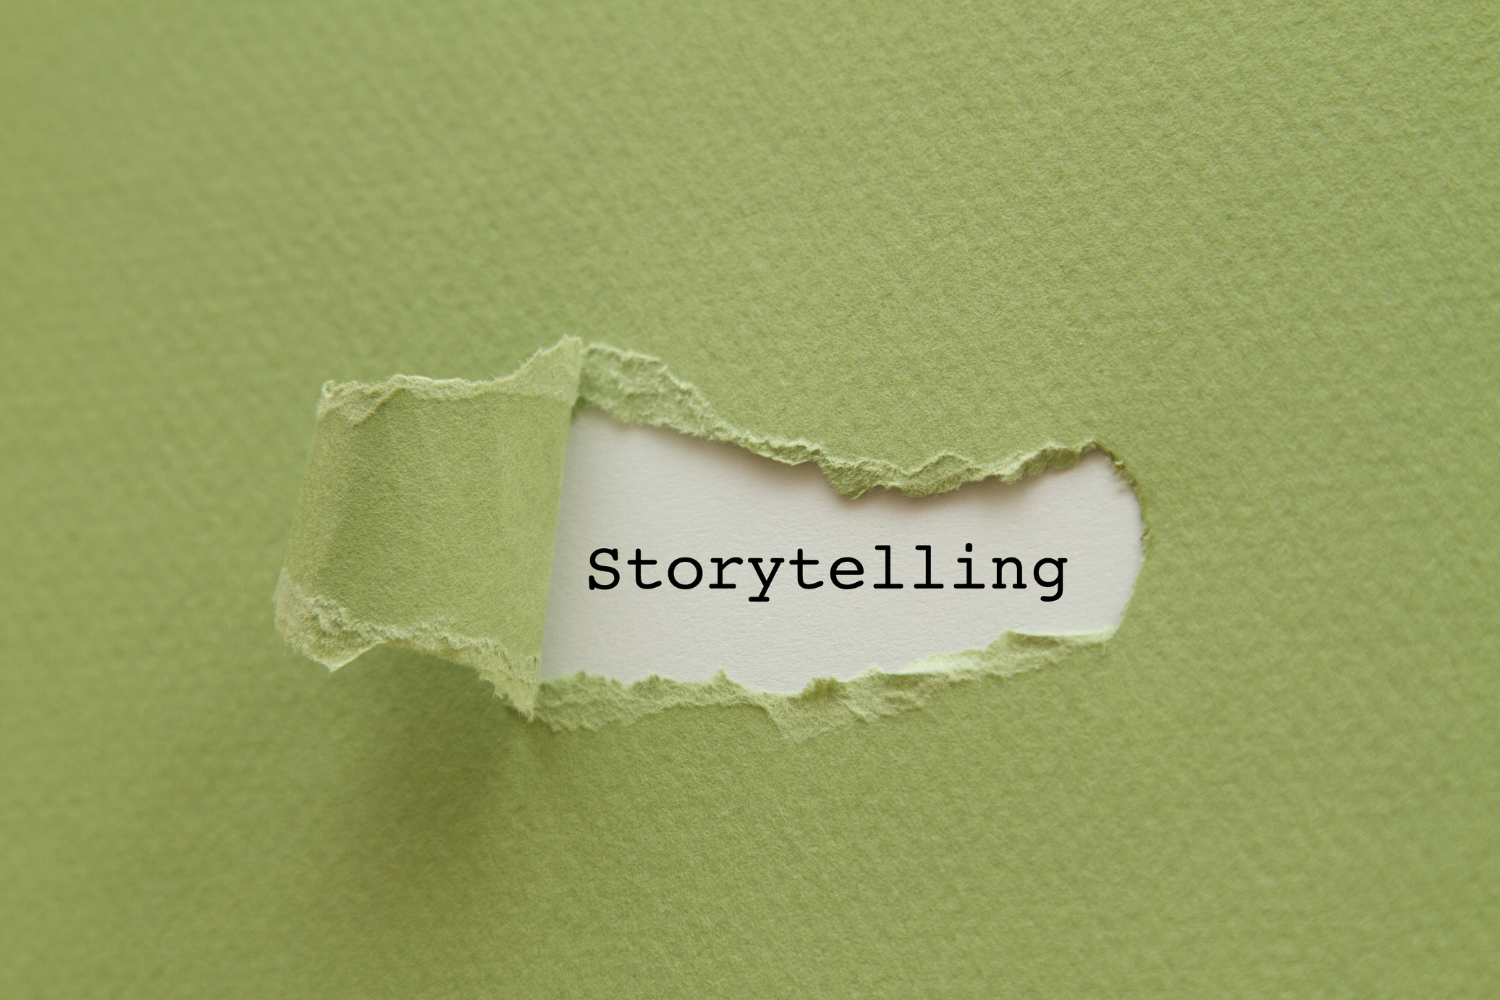 188-c907d201 Story - Storytelling tips